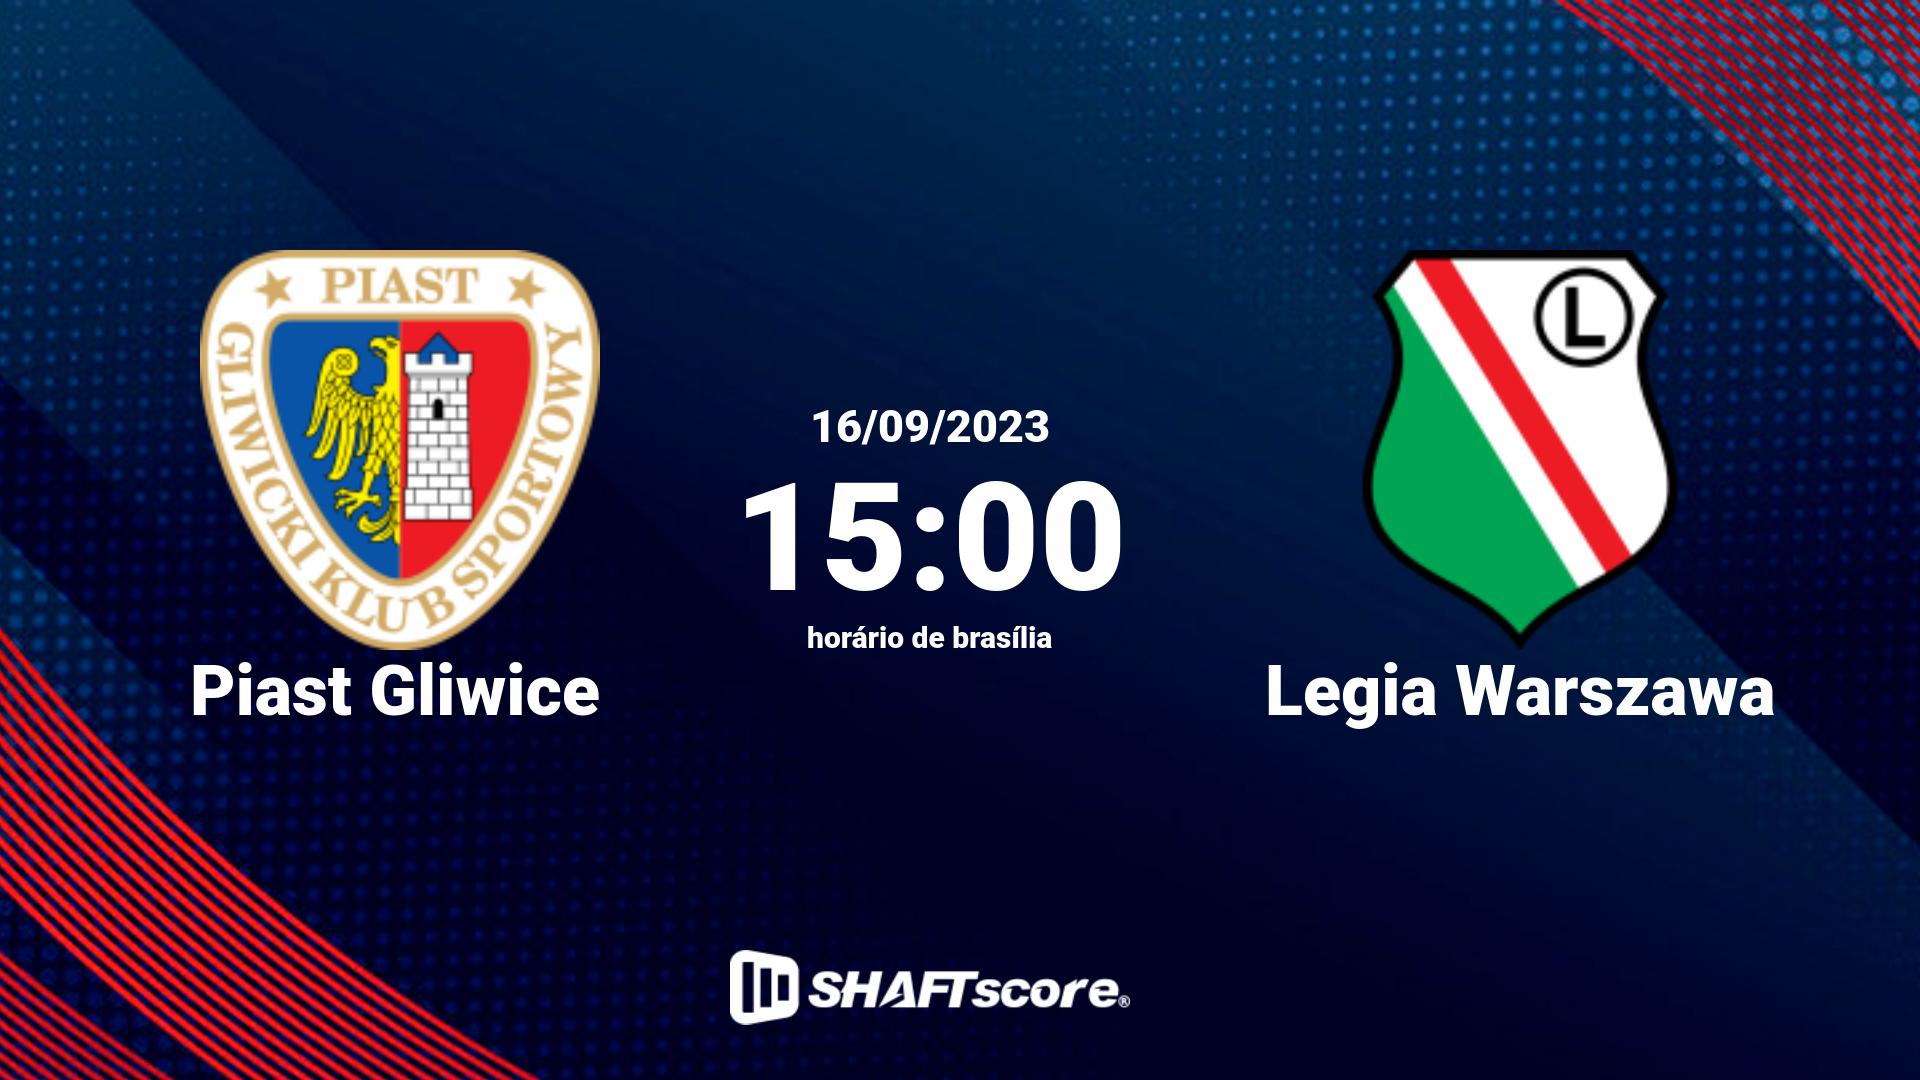 Estatísticas do jogo Piast Gliwice vs Legia Warszawa 16.09 15:00